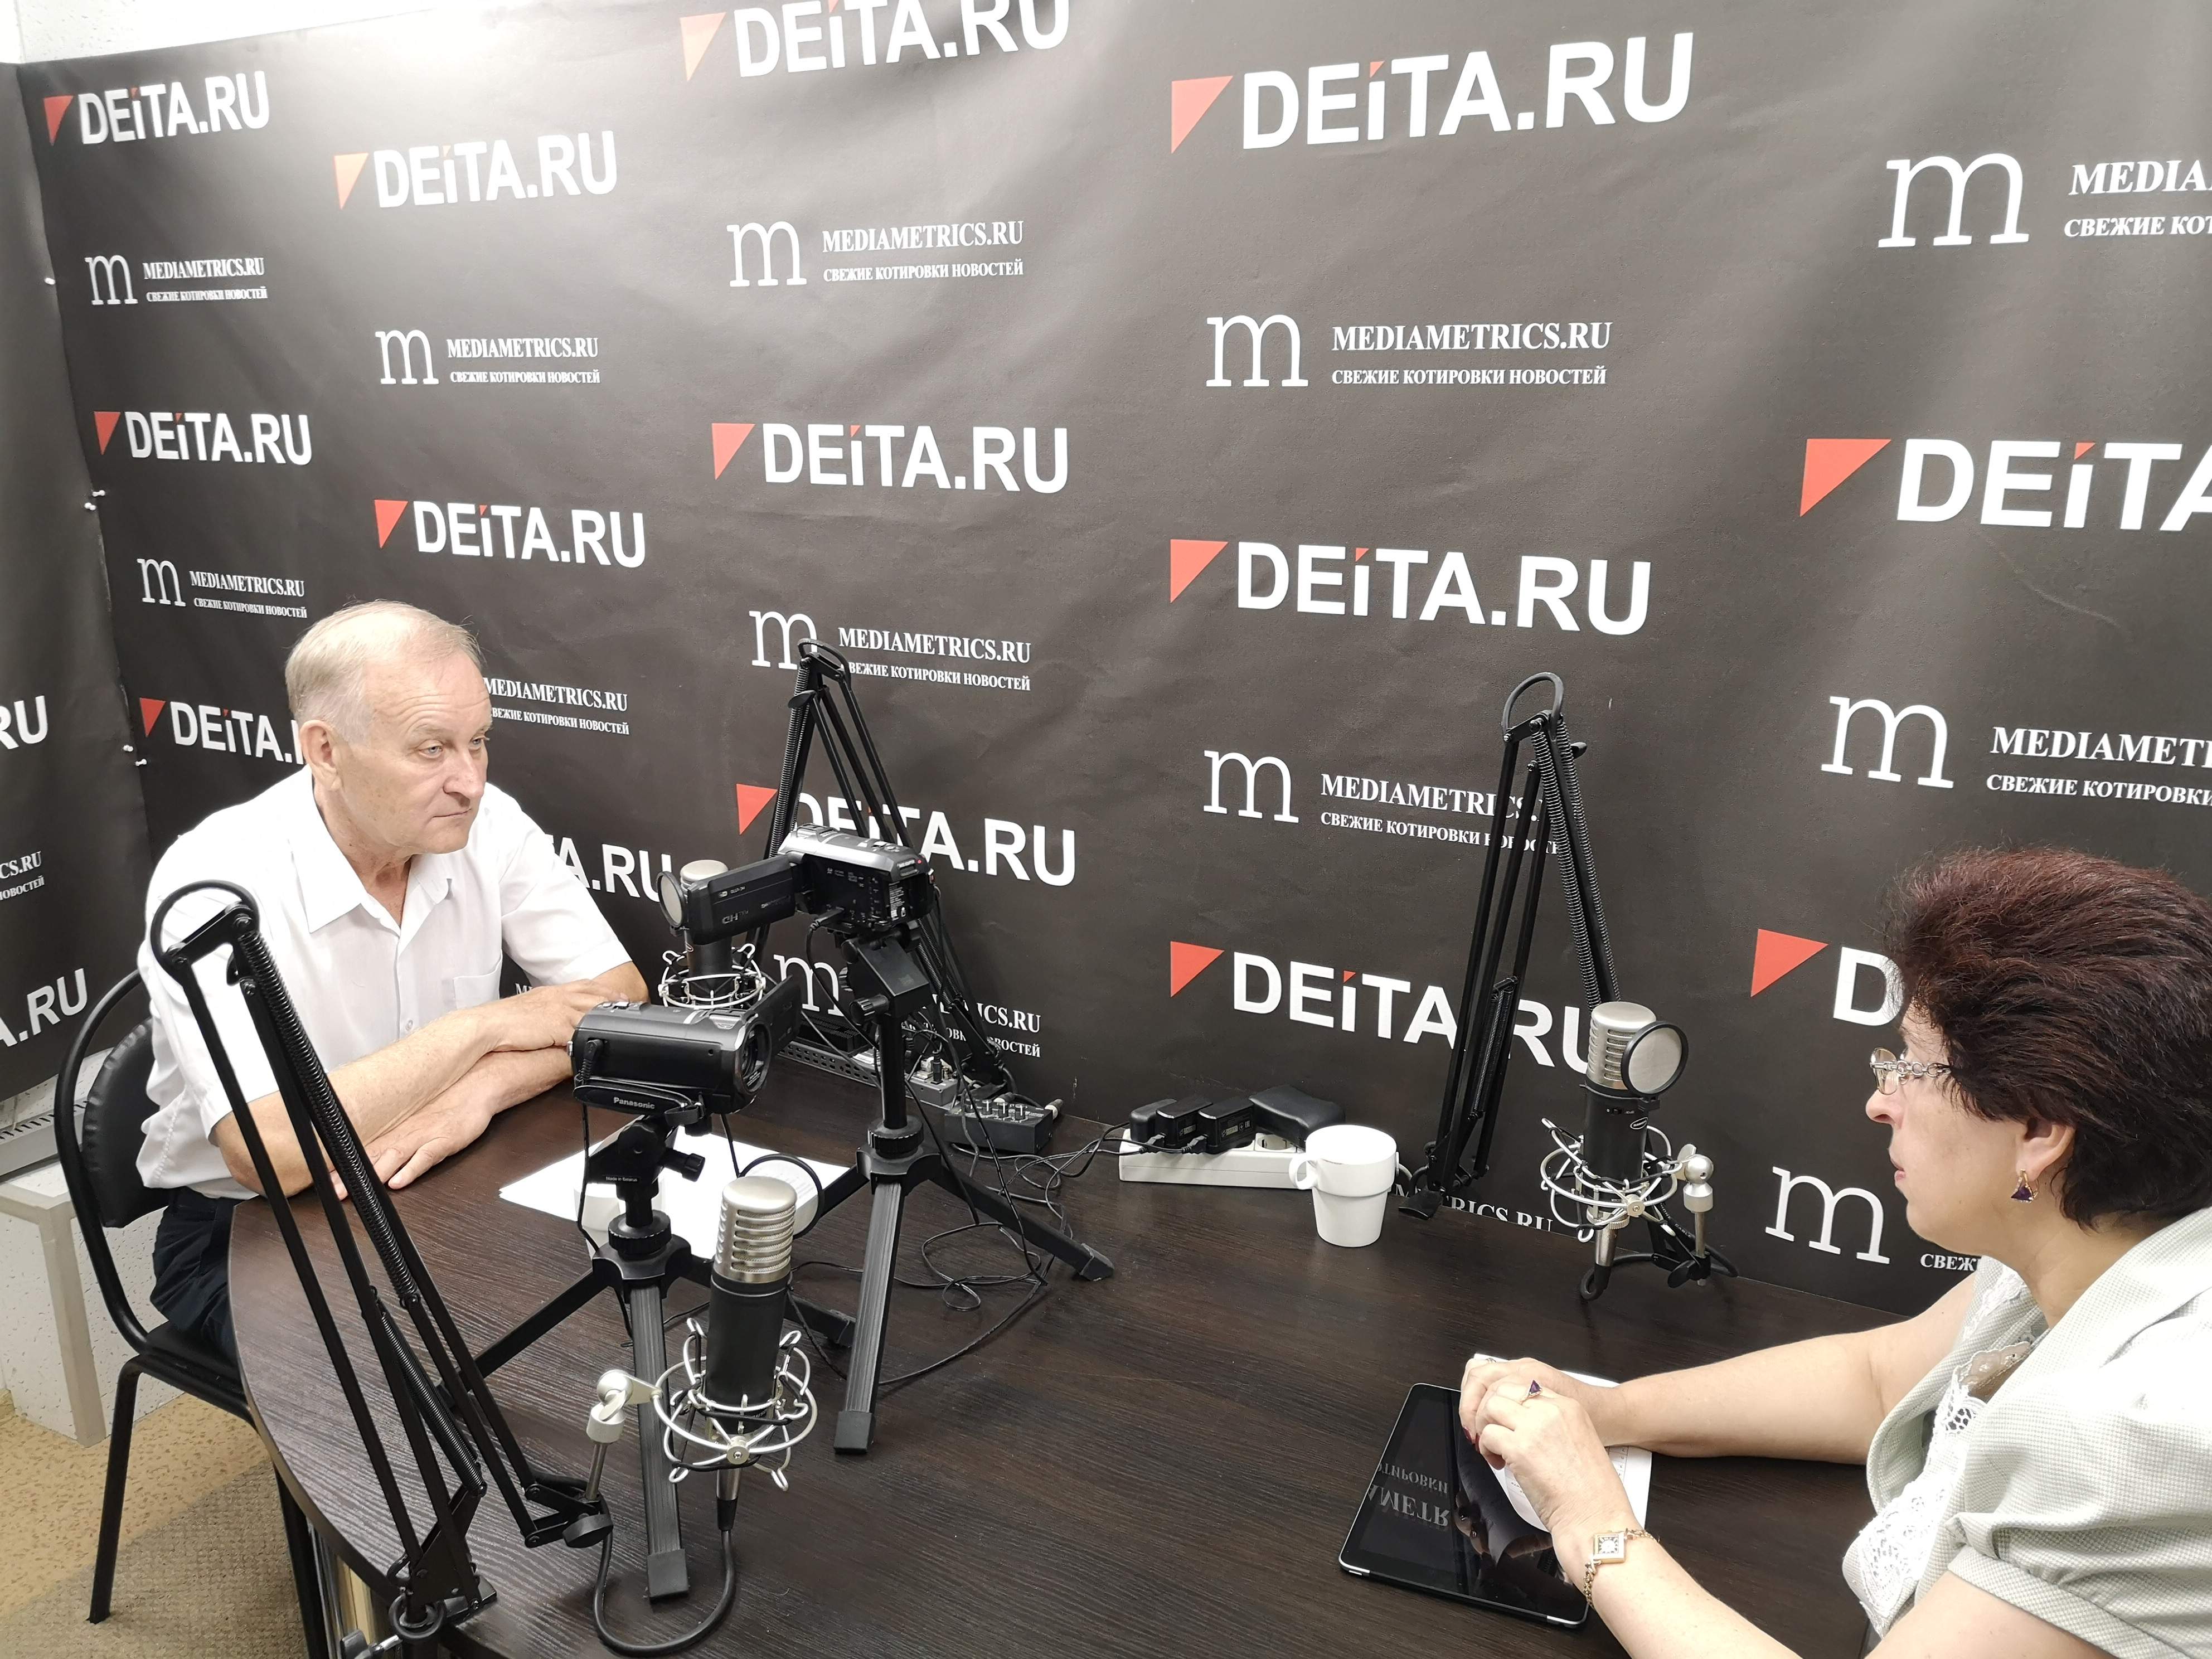 Президент ВГУЭС Геннадий Лазарев стал радиоведущим: разговор об образовании с вице-губернатором